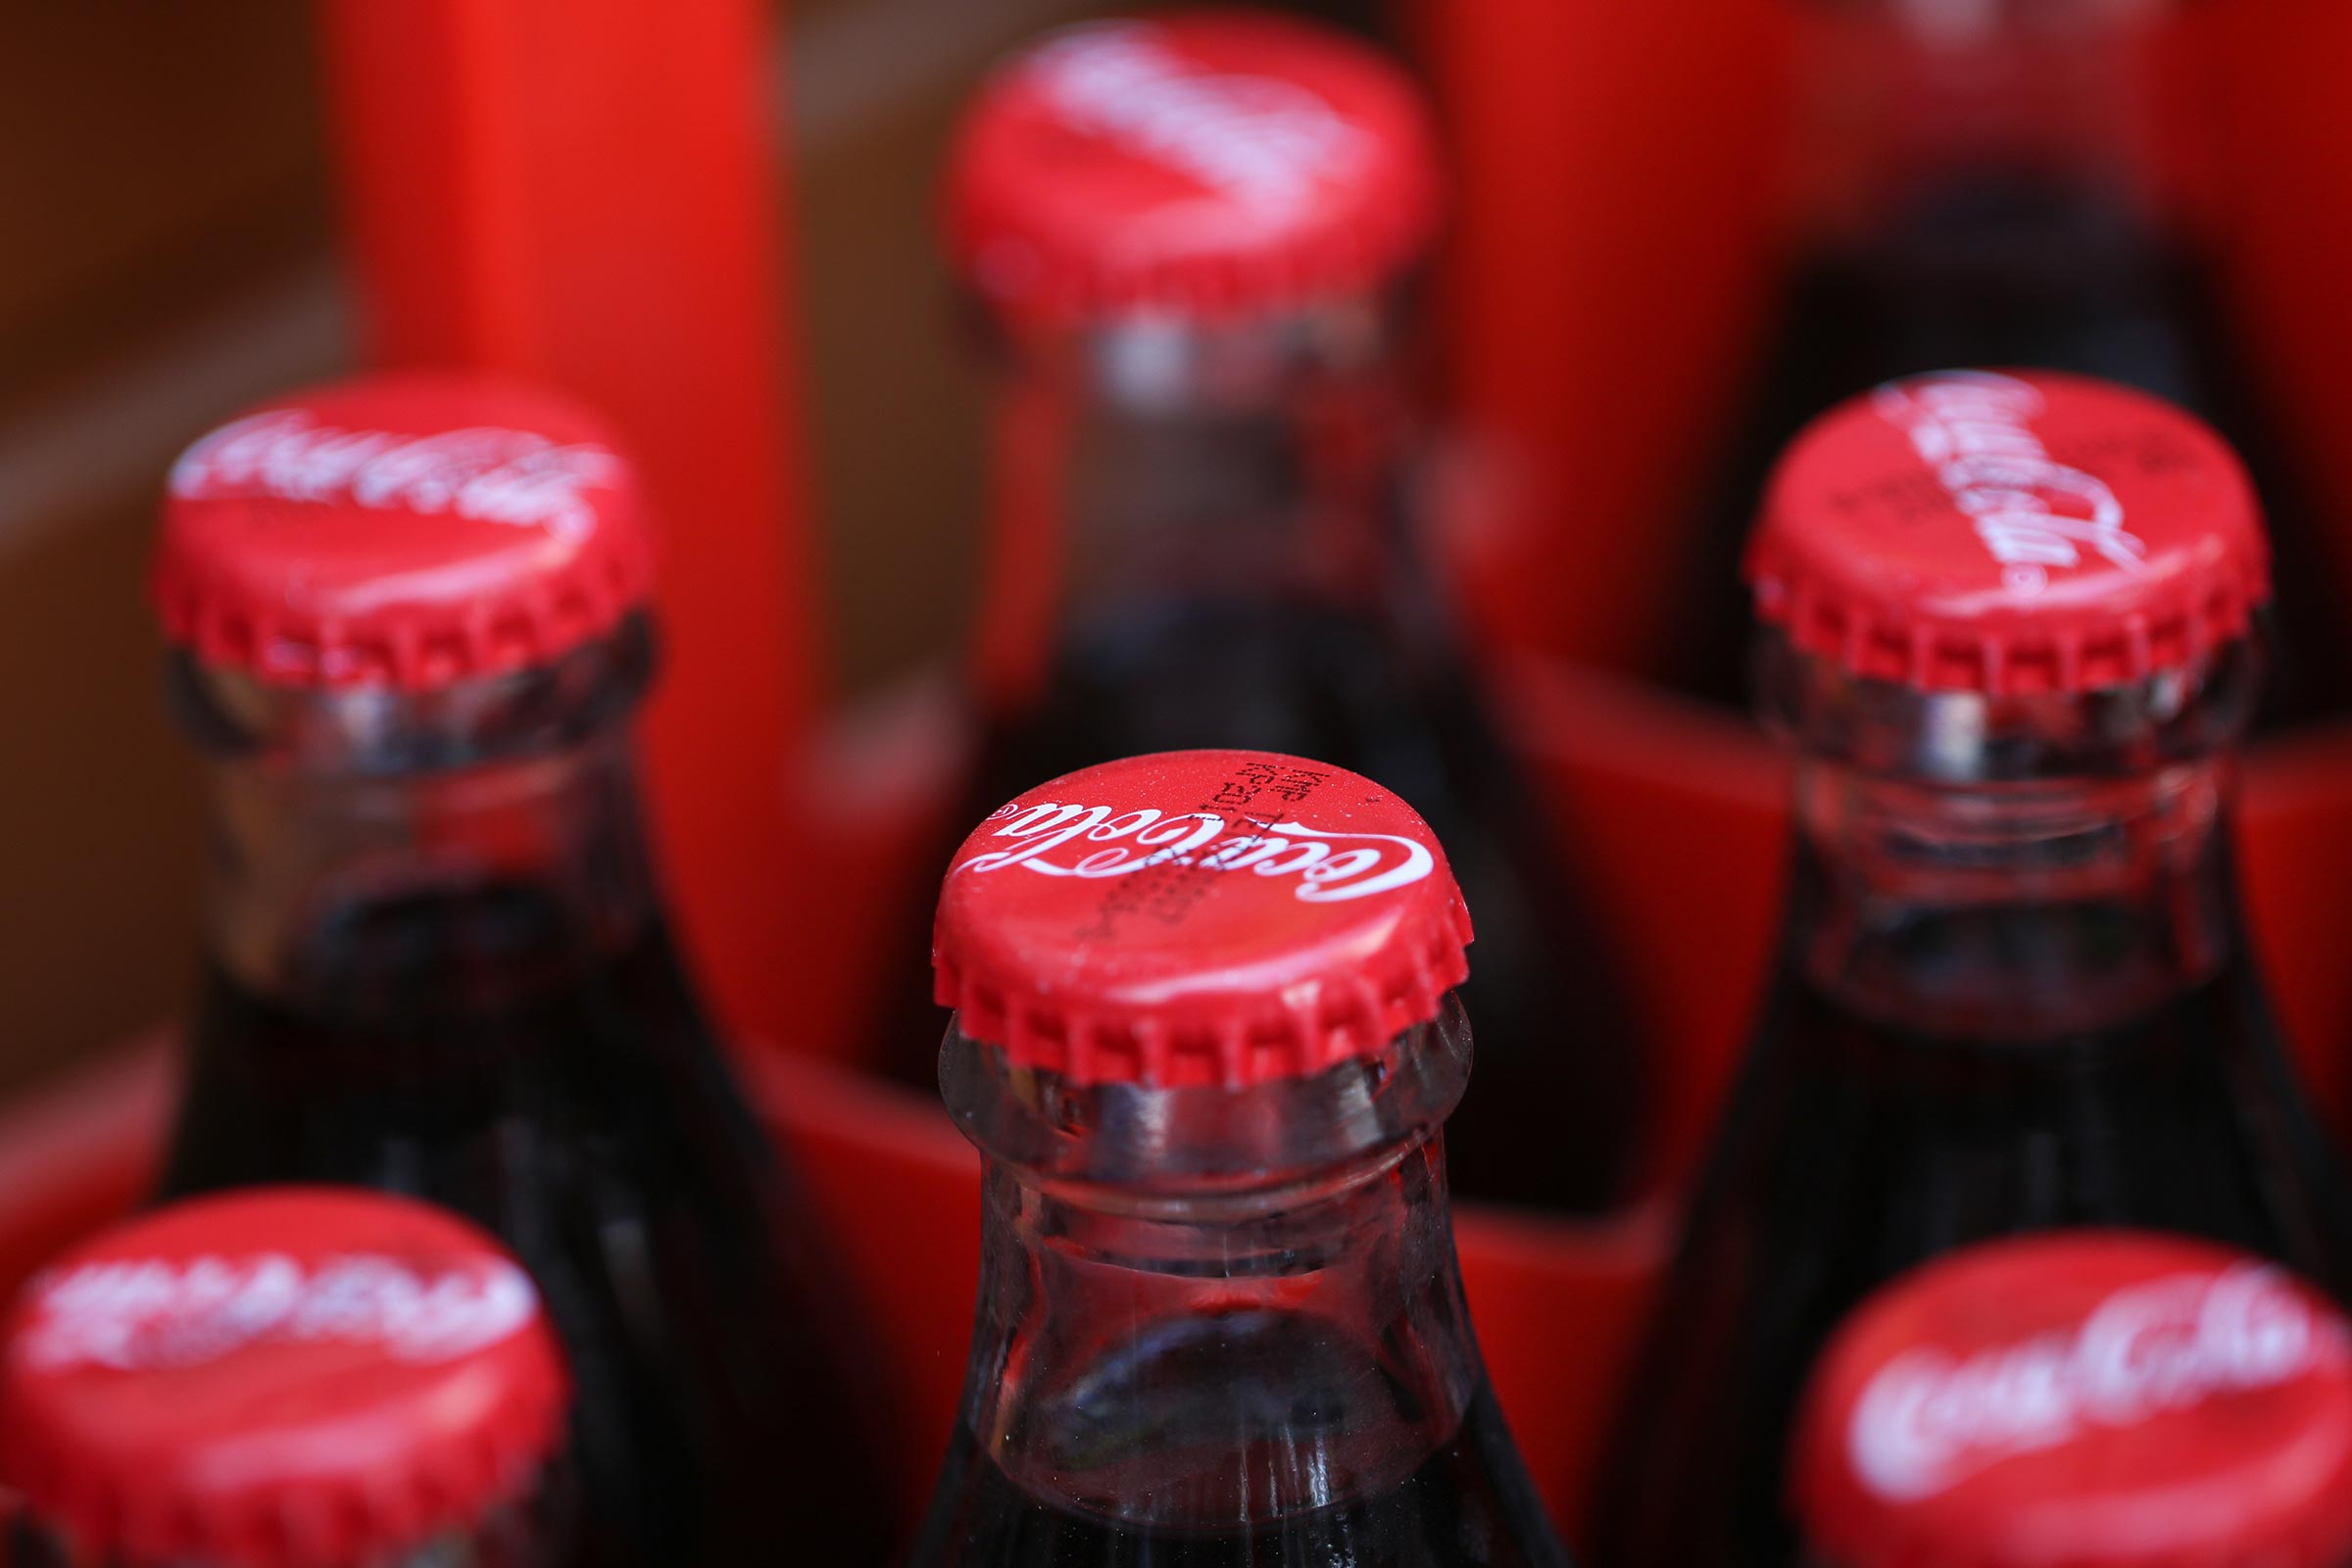 Το επτασφράγιστο μυστικό που κρύβει η Coca Cola για πάνω από 130 χρόνια (βίντεο)